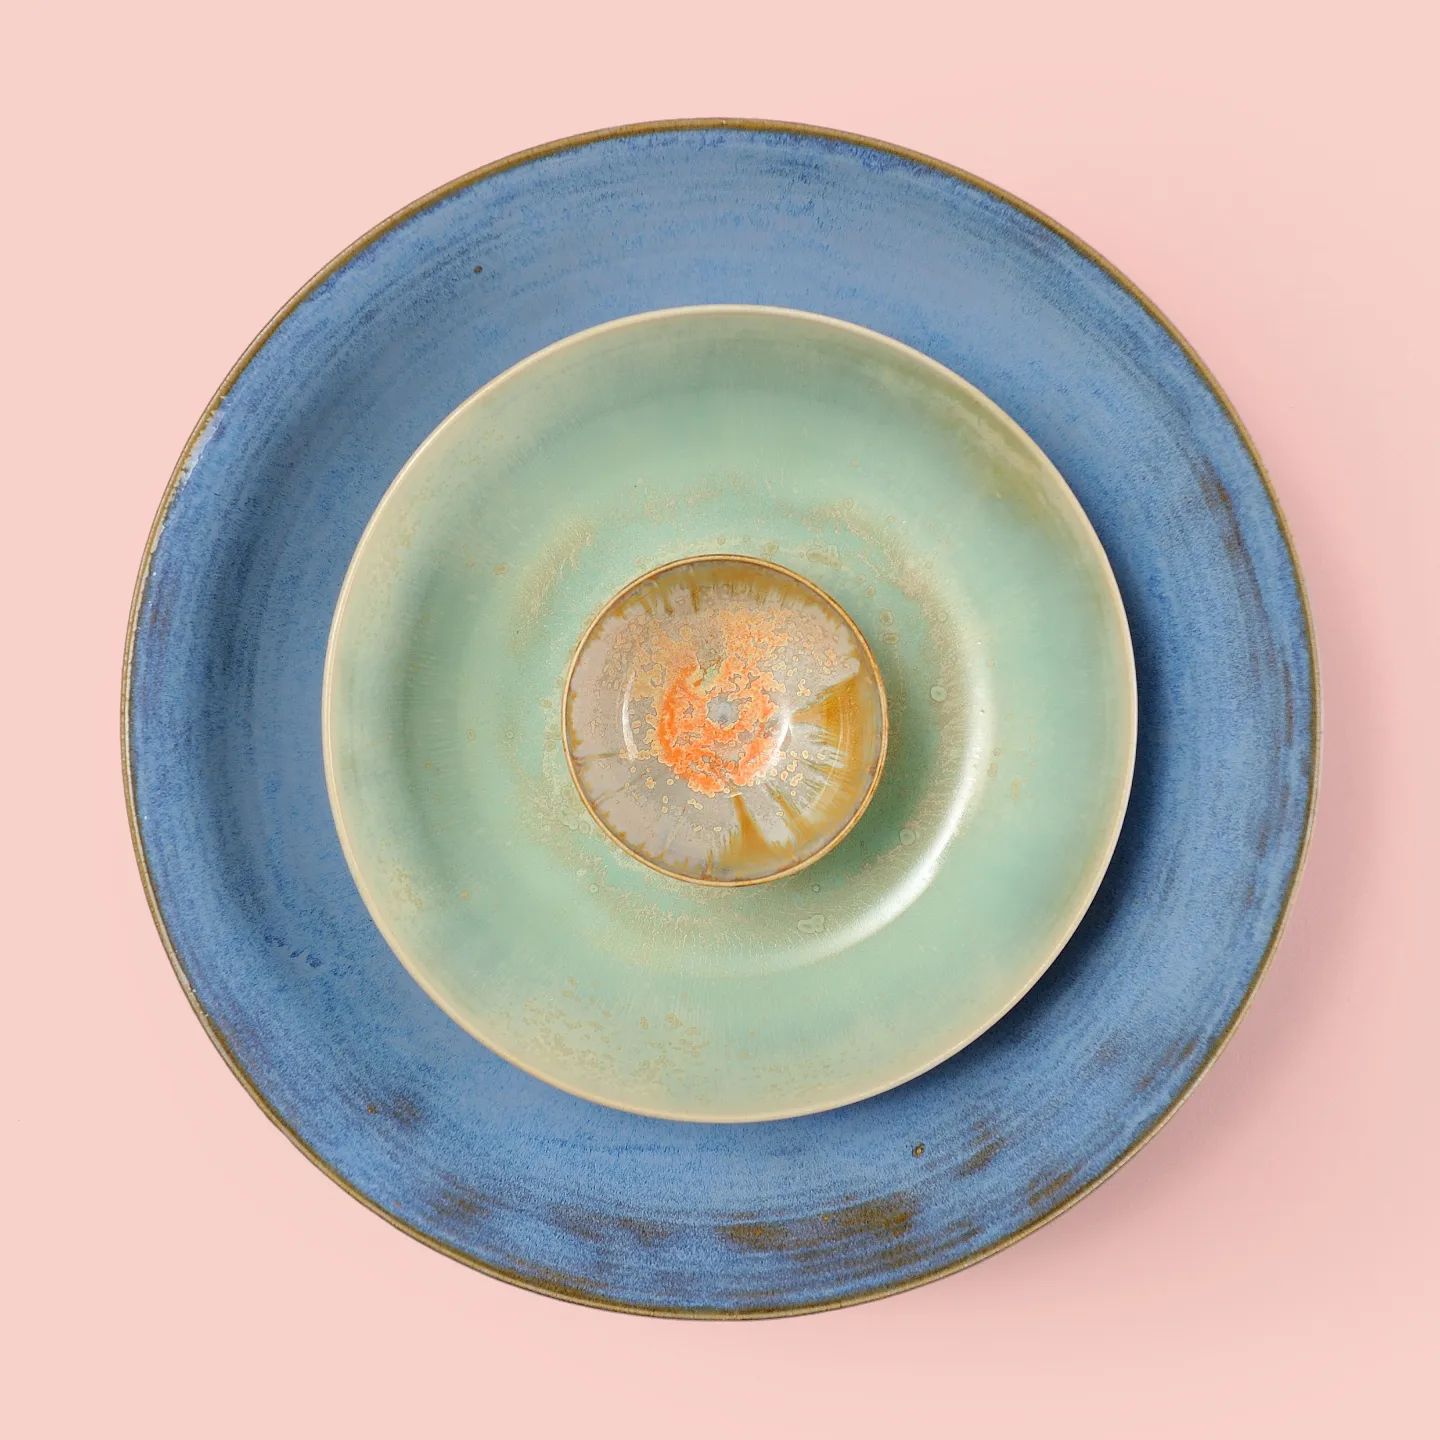 Zeit für neue Aufkleber! Ich habe eine auf der Grundlage dieses Bildes erstellt. So werden Ihre Geschenke von nun an mit einem Nest aus Schalen personalisiert. #geschenk #keramik #ceramique #keramik #töpferei #schalen #farben #handgemacht #radgedreht #handgefertigt #handgemacht #steinzeug #holländischesdesign #design #handwerklich #Haarlem #ton #potterystudio #ceramicsstudio